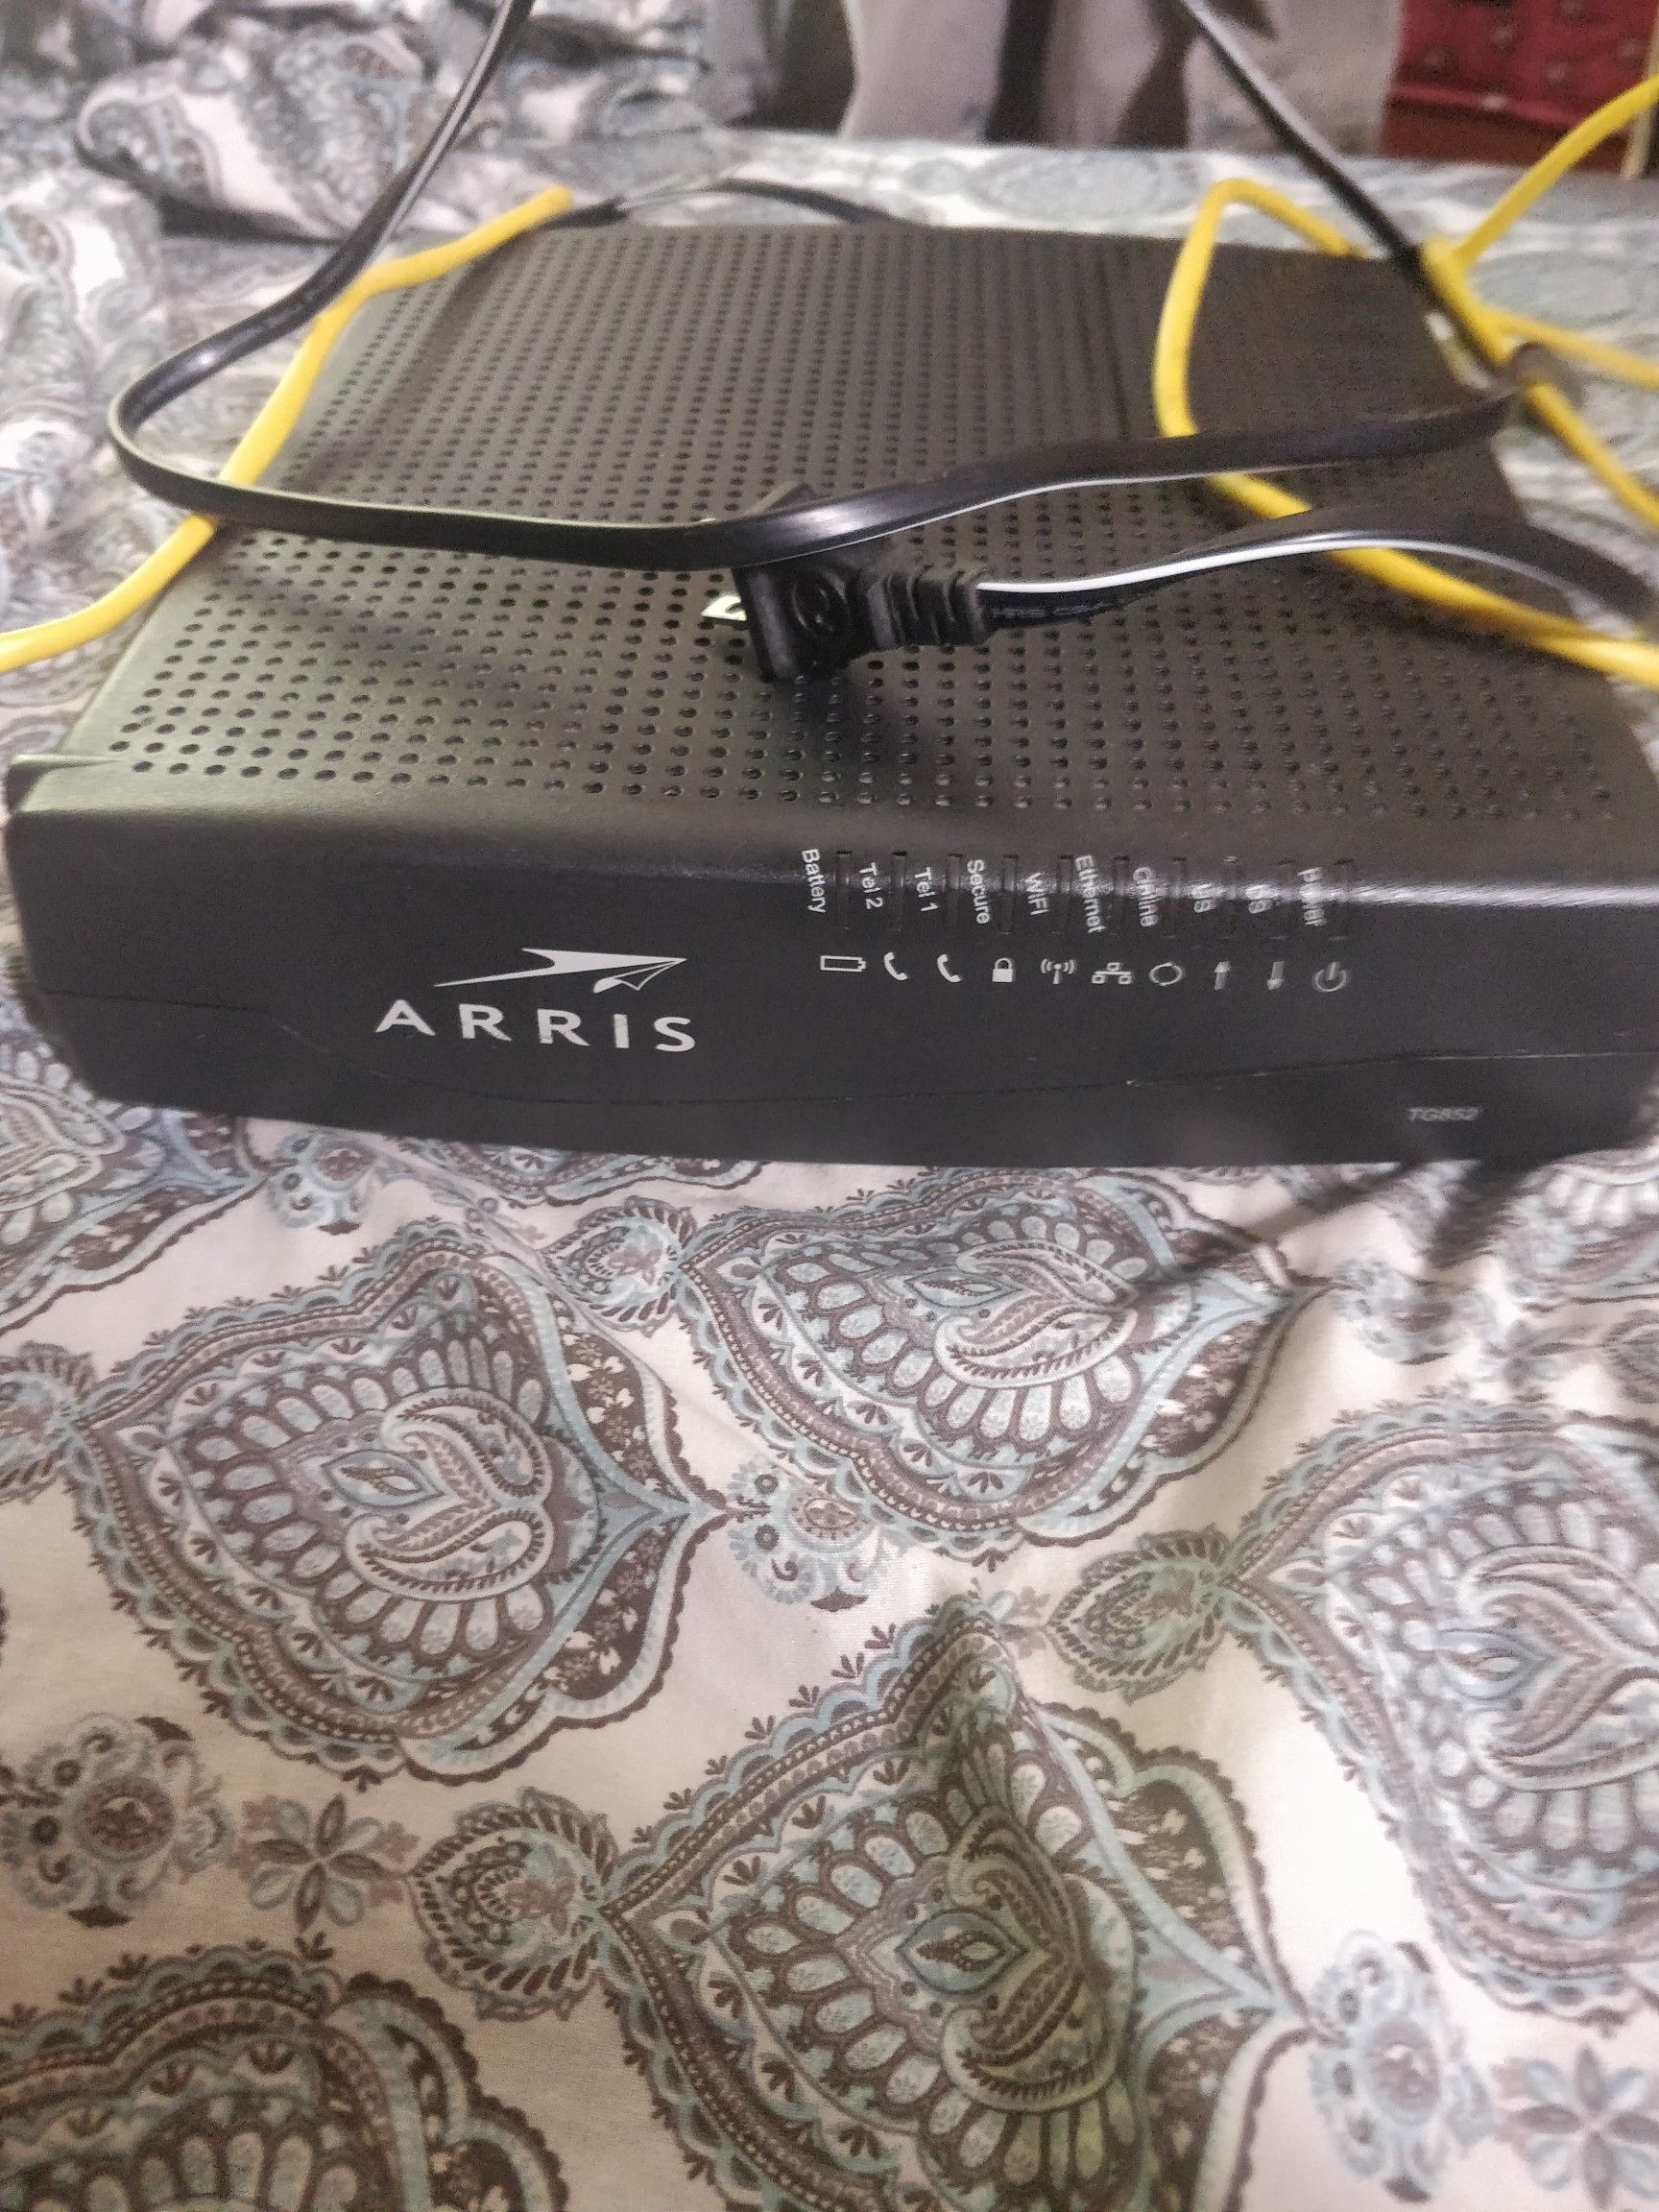 Arris TG852 modem & router